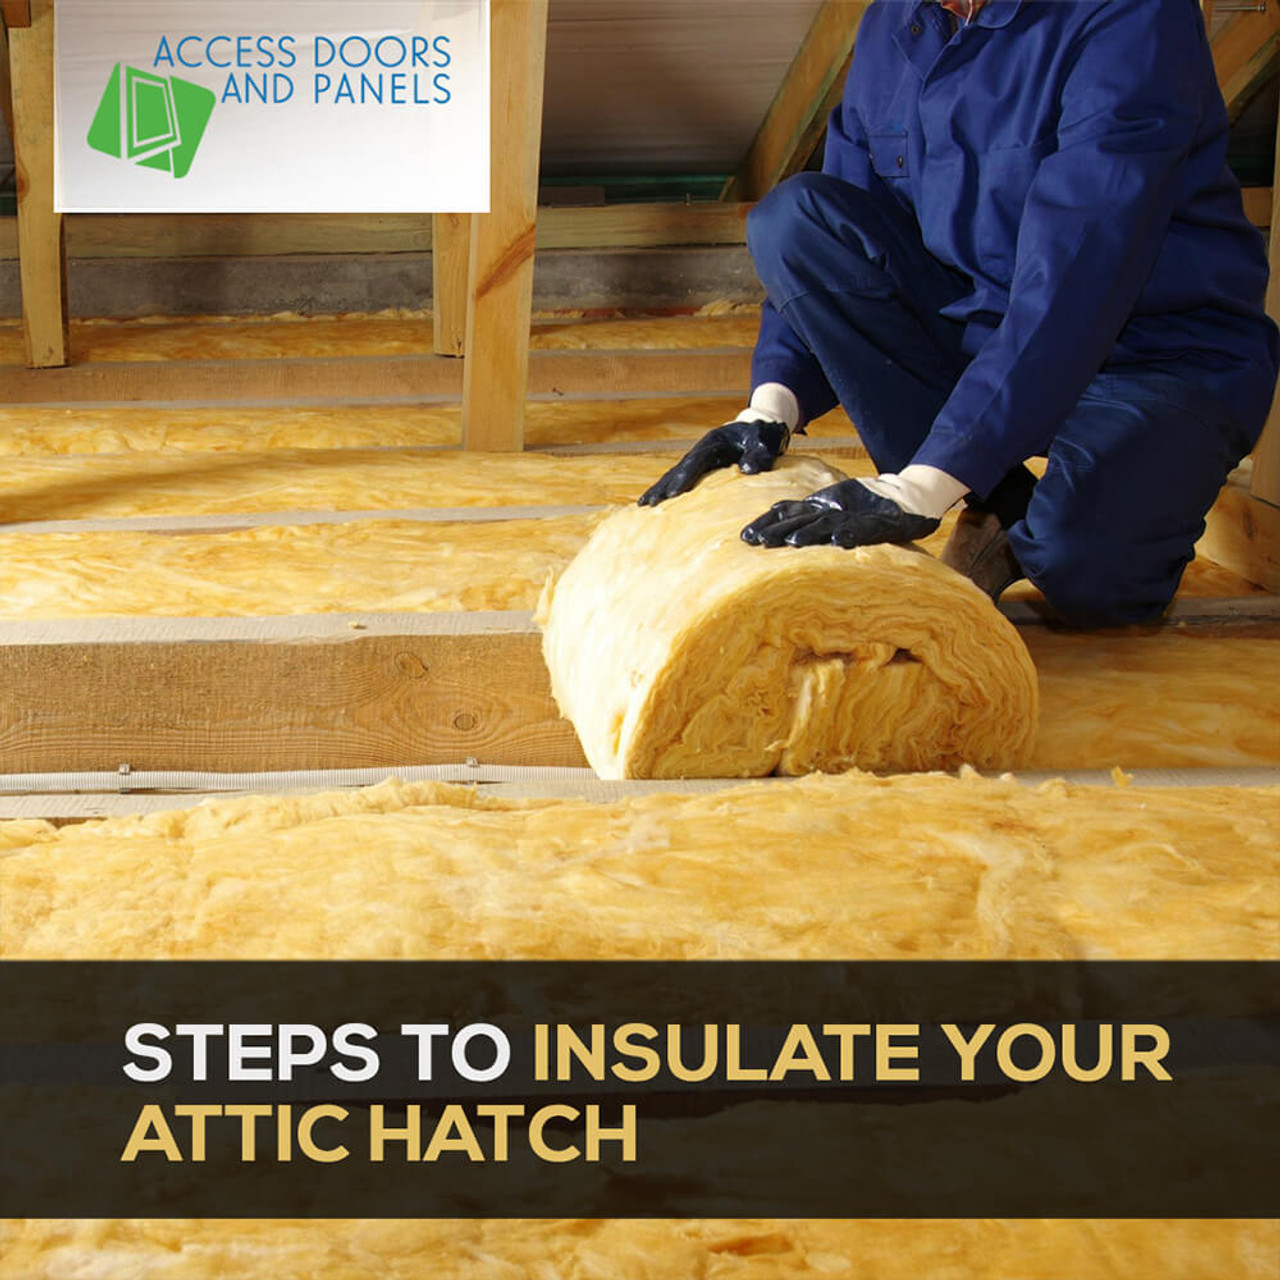 Door insulation tips: Insulate your doors - Climate Seal